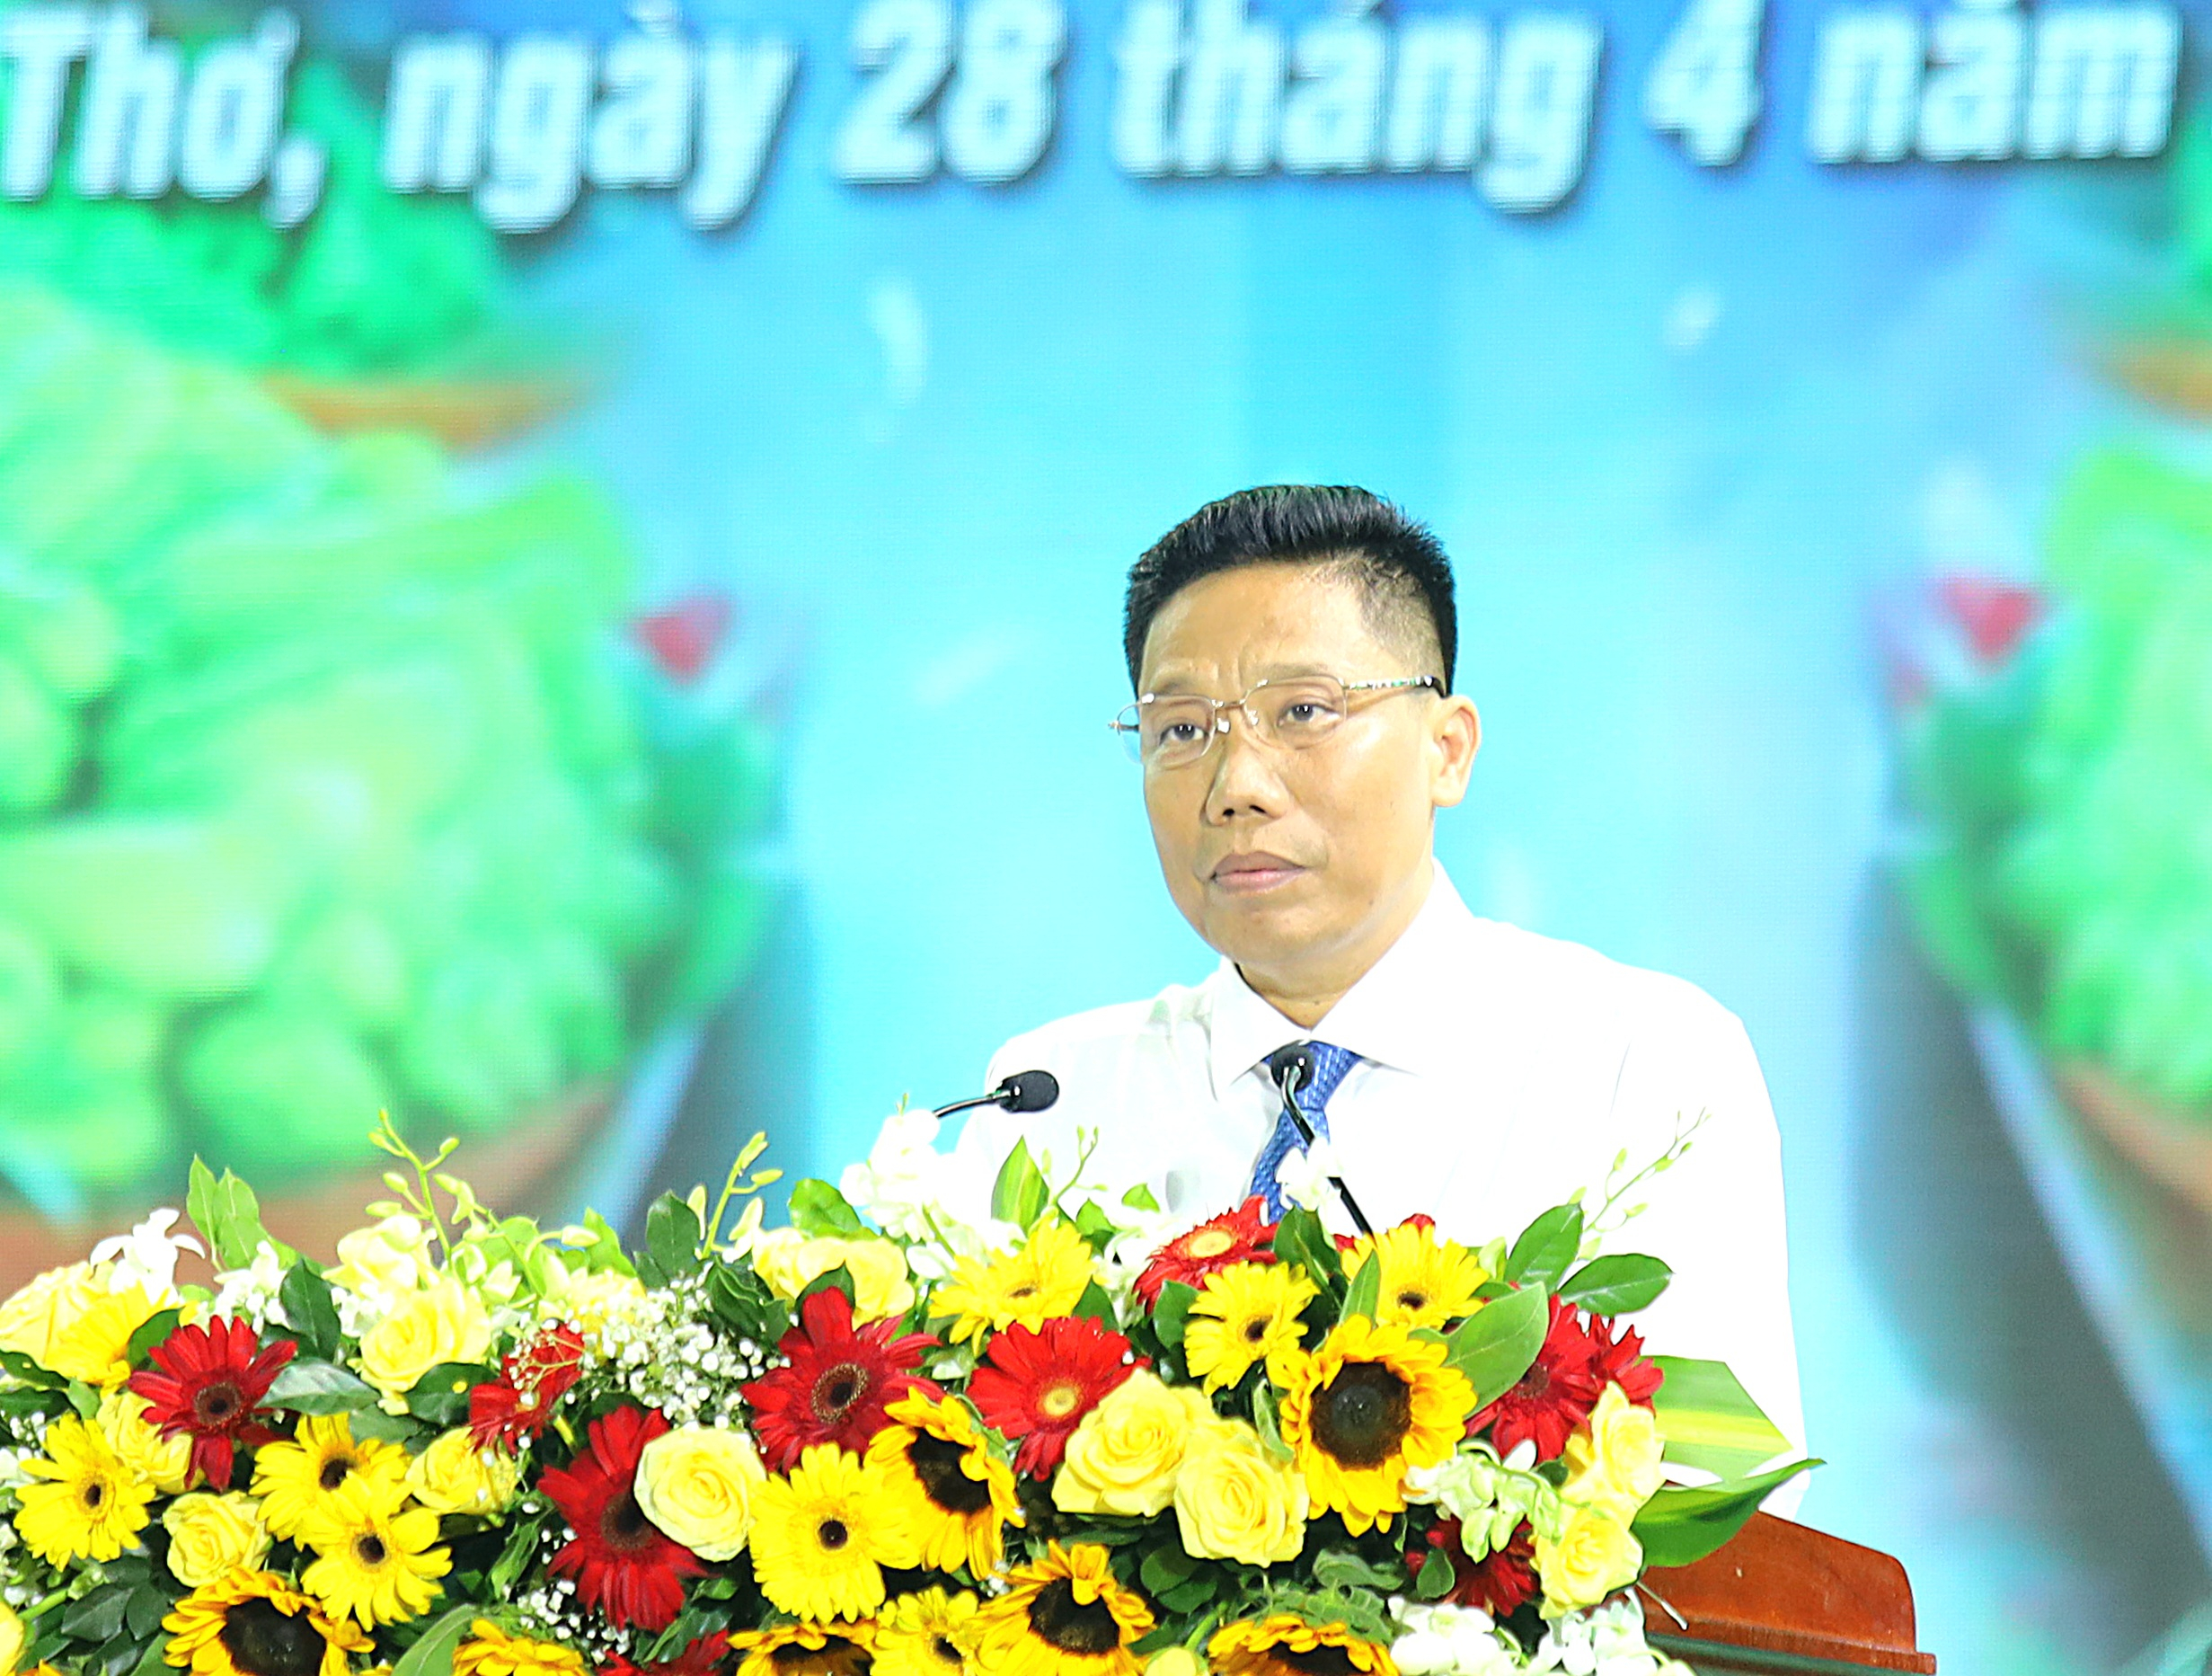 Ông Nguyễn Thực Hiện - Phó Chủ tịch UBND TP. Cần Thơ phát biểu tại lễ khai mạc.